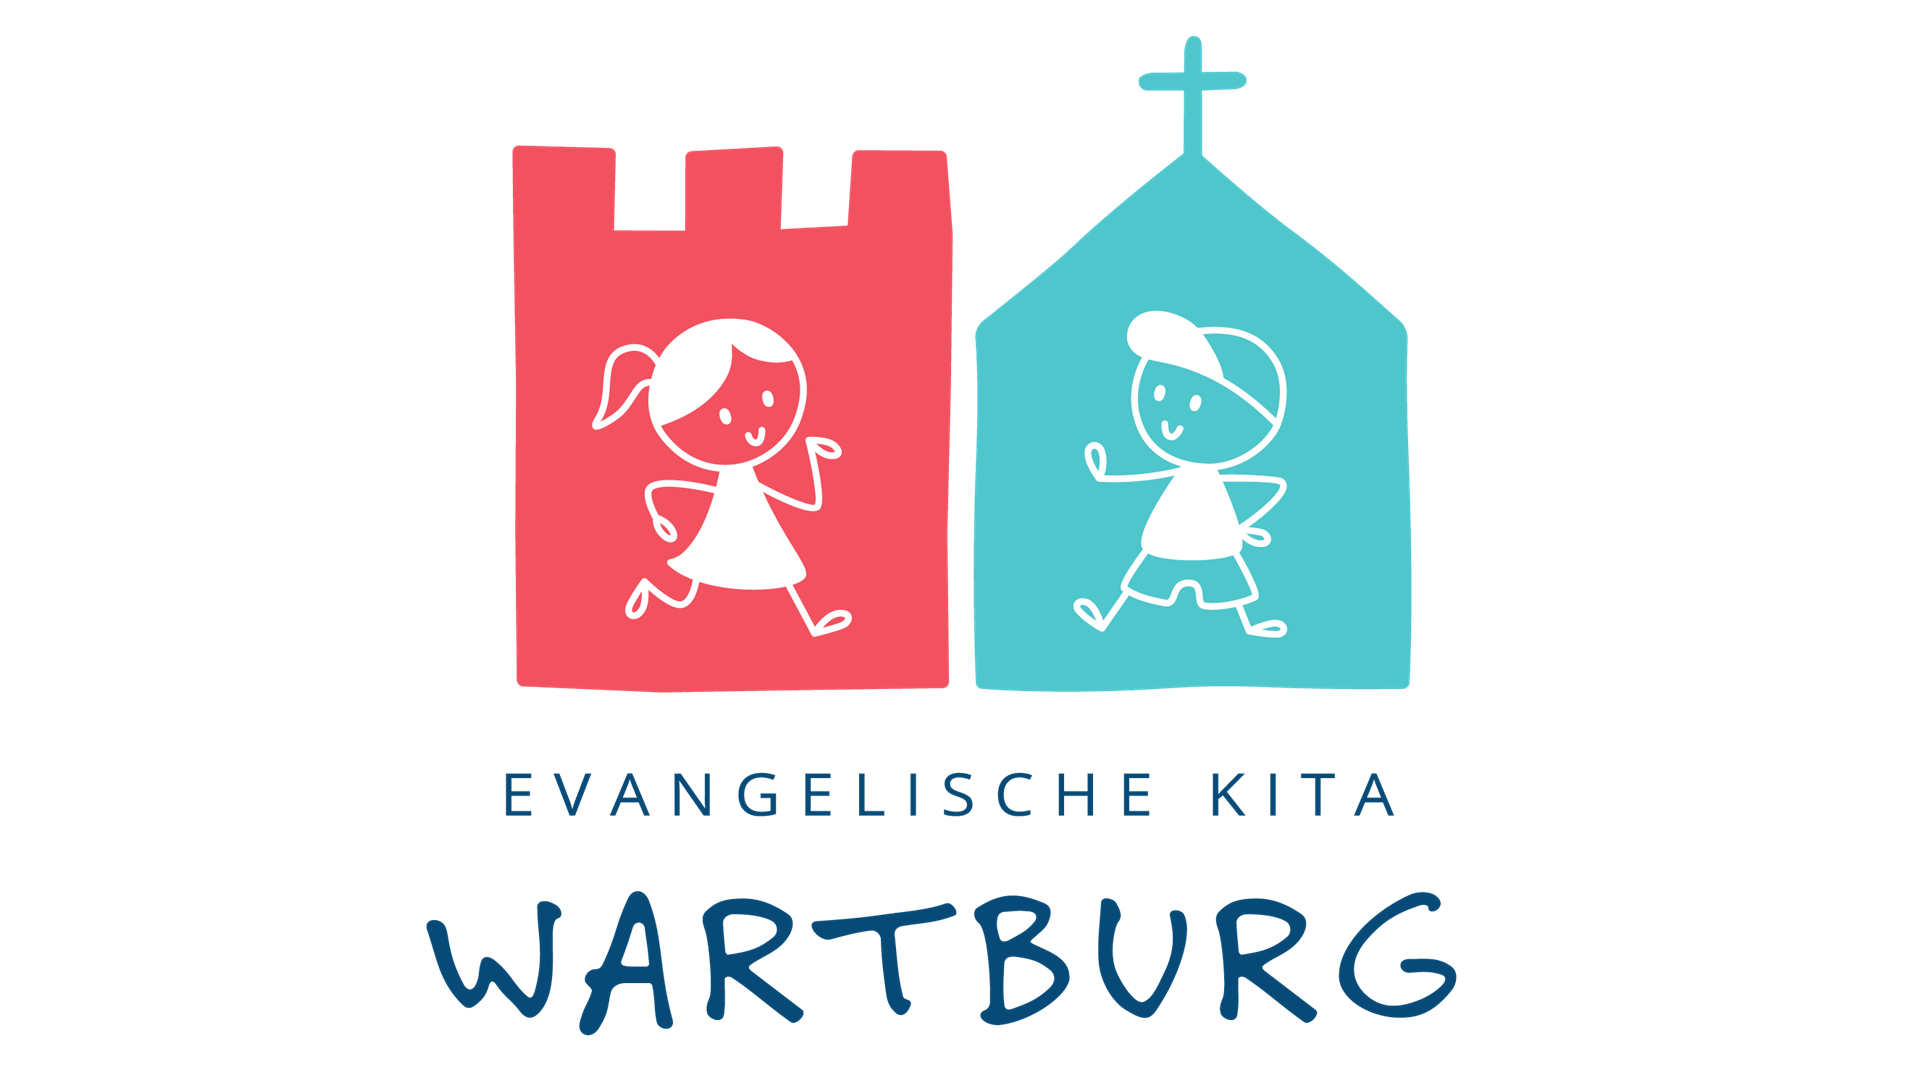 Ein gezeichnetes Logo. Auf der rechten Seite in einem stilisierten kirchlichen Gebäude aus blauer Farbe steht ein gezeichneter Junge mit Cap. Auf der linken Seite in einer stilisierten Burg aus roter Farbe steht ein gezeichnetes Mädchen mit Pferdeschwanz. Darunter der Schriftzug "Evangelische Kita Wartburg".